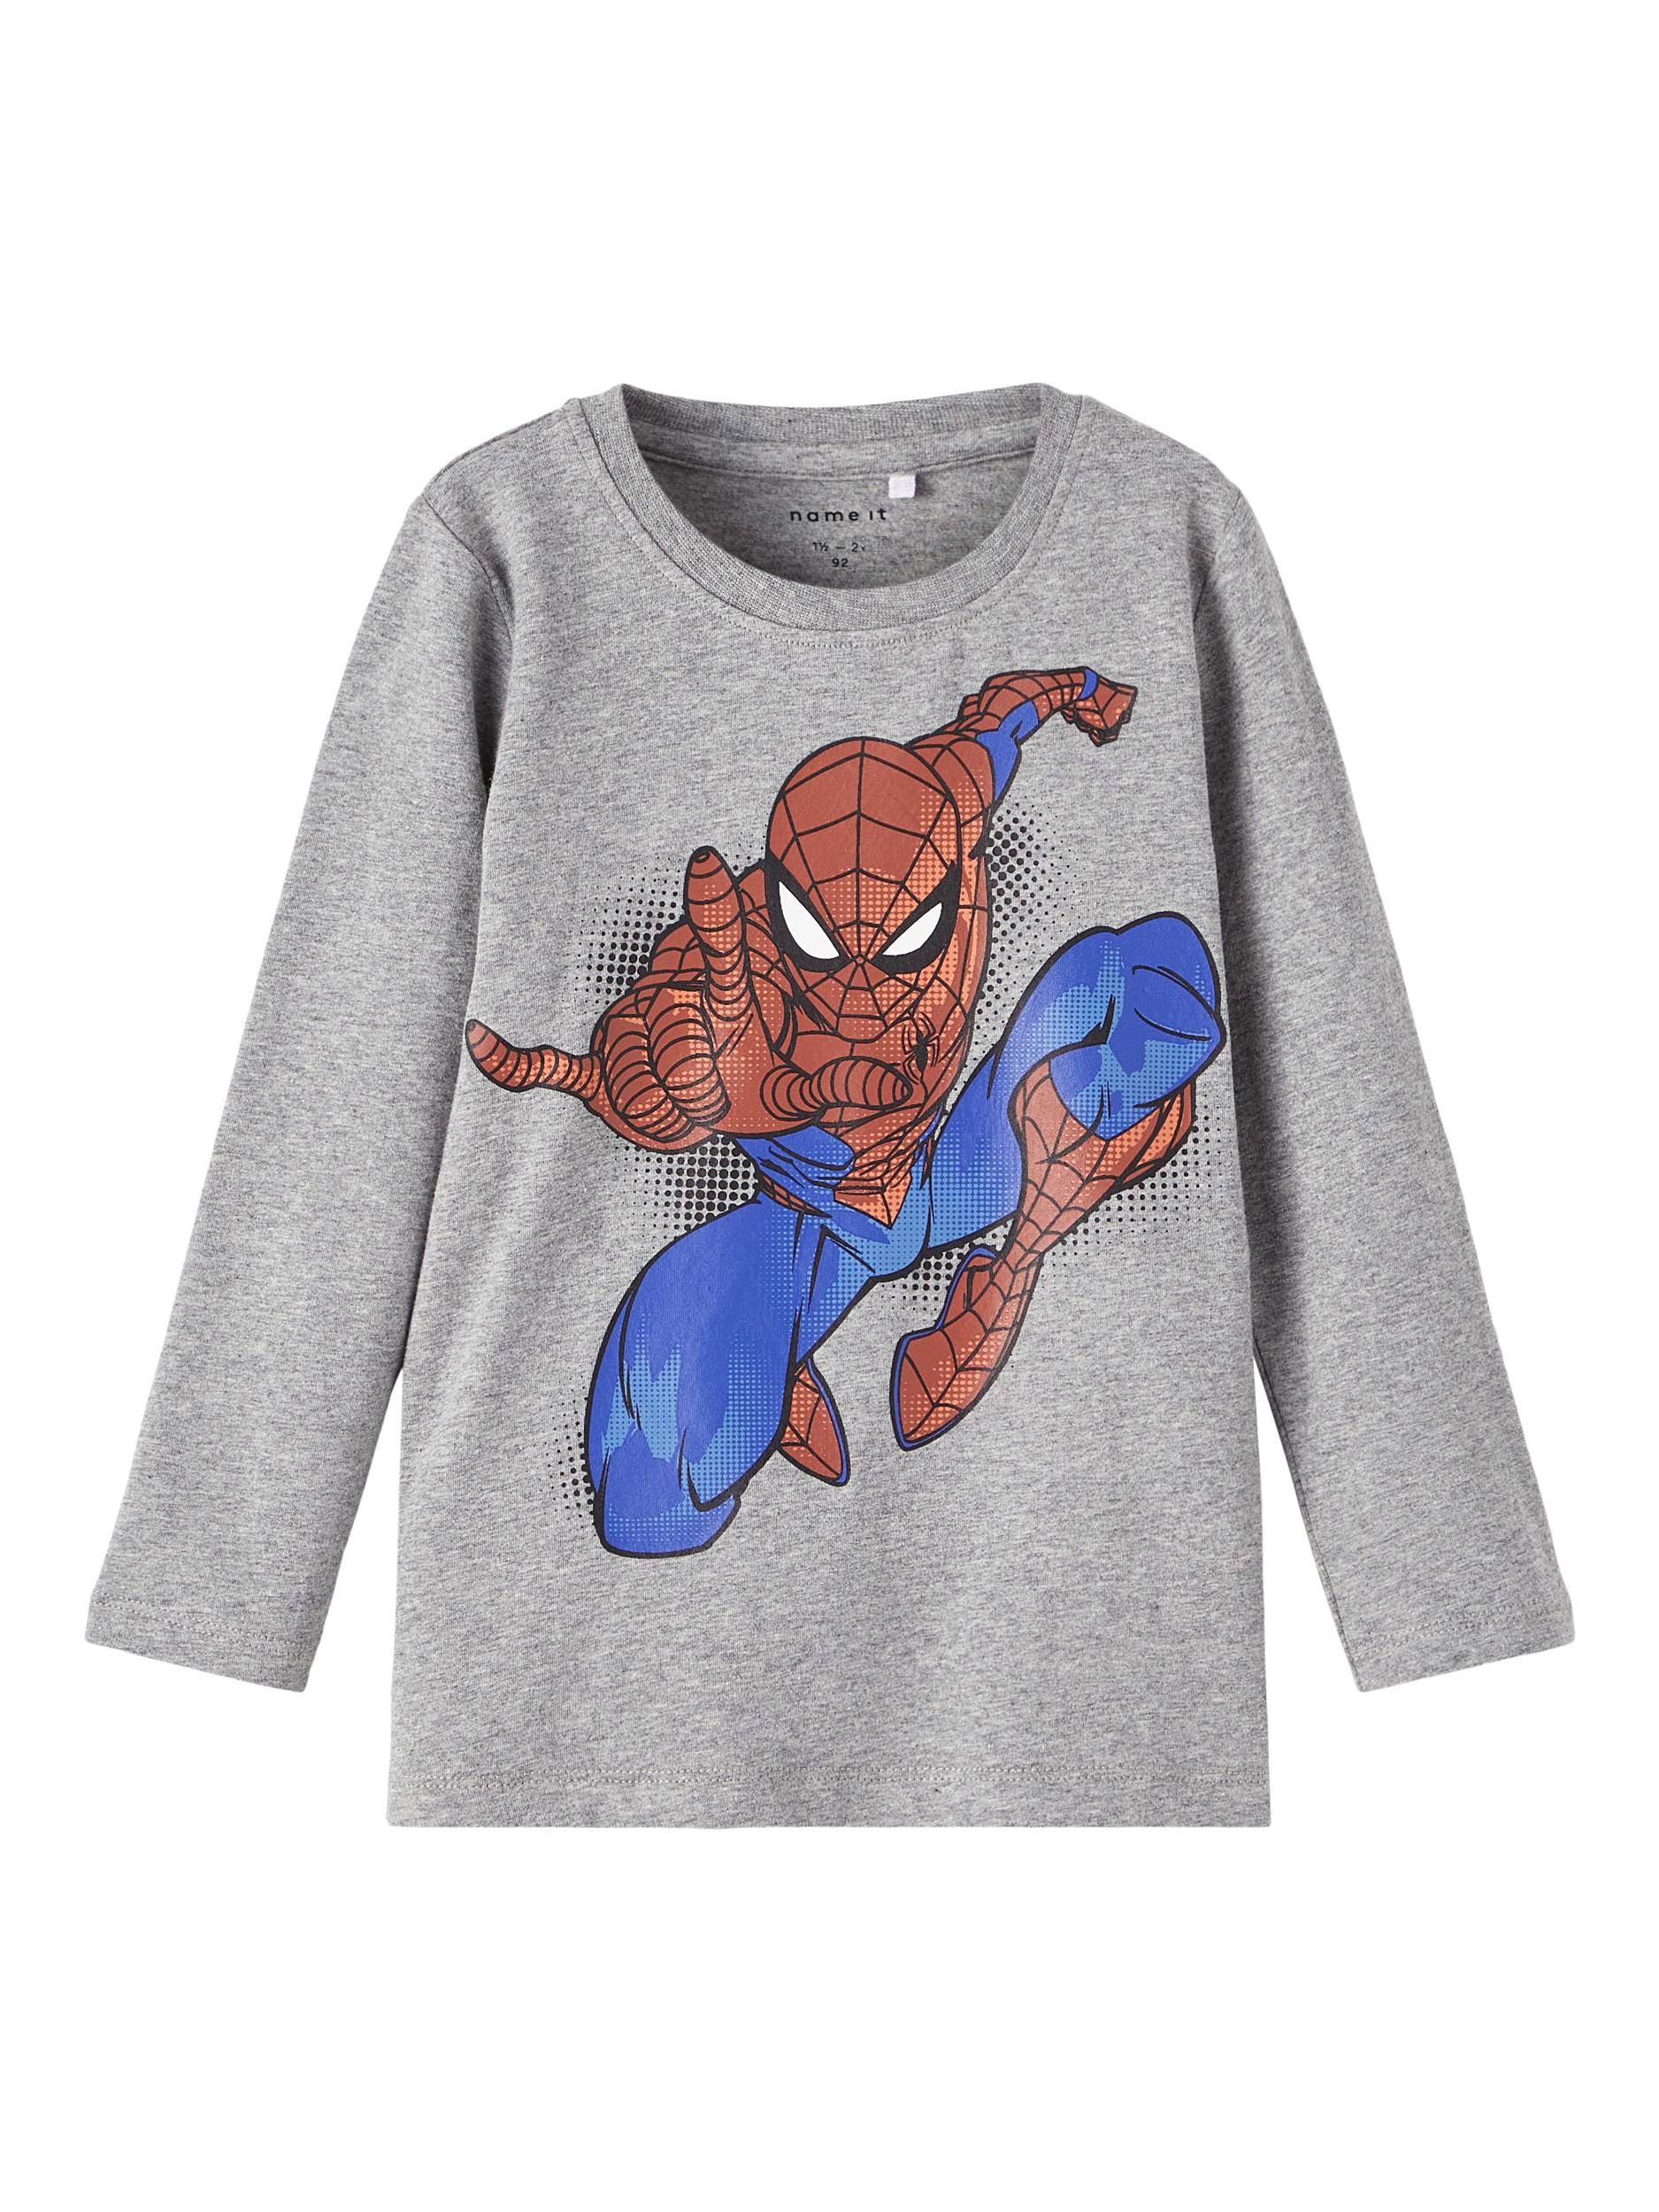 Oktav Spiderman Bluse